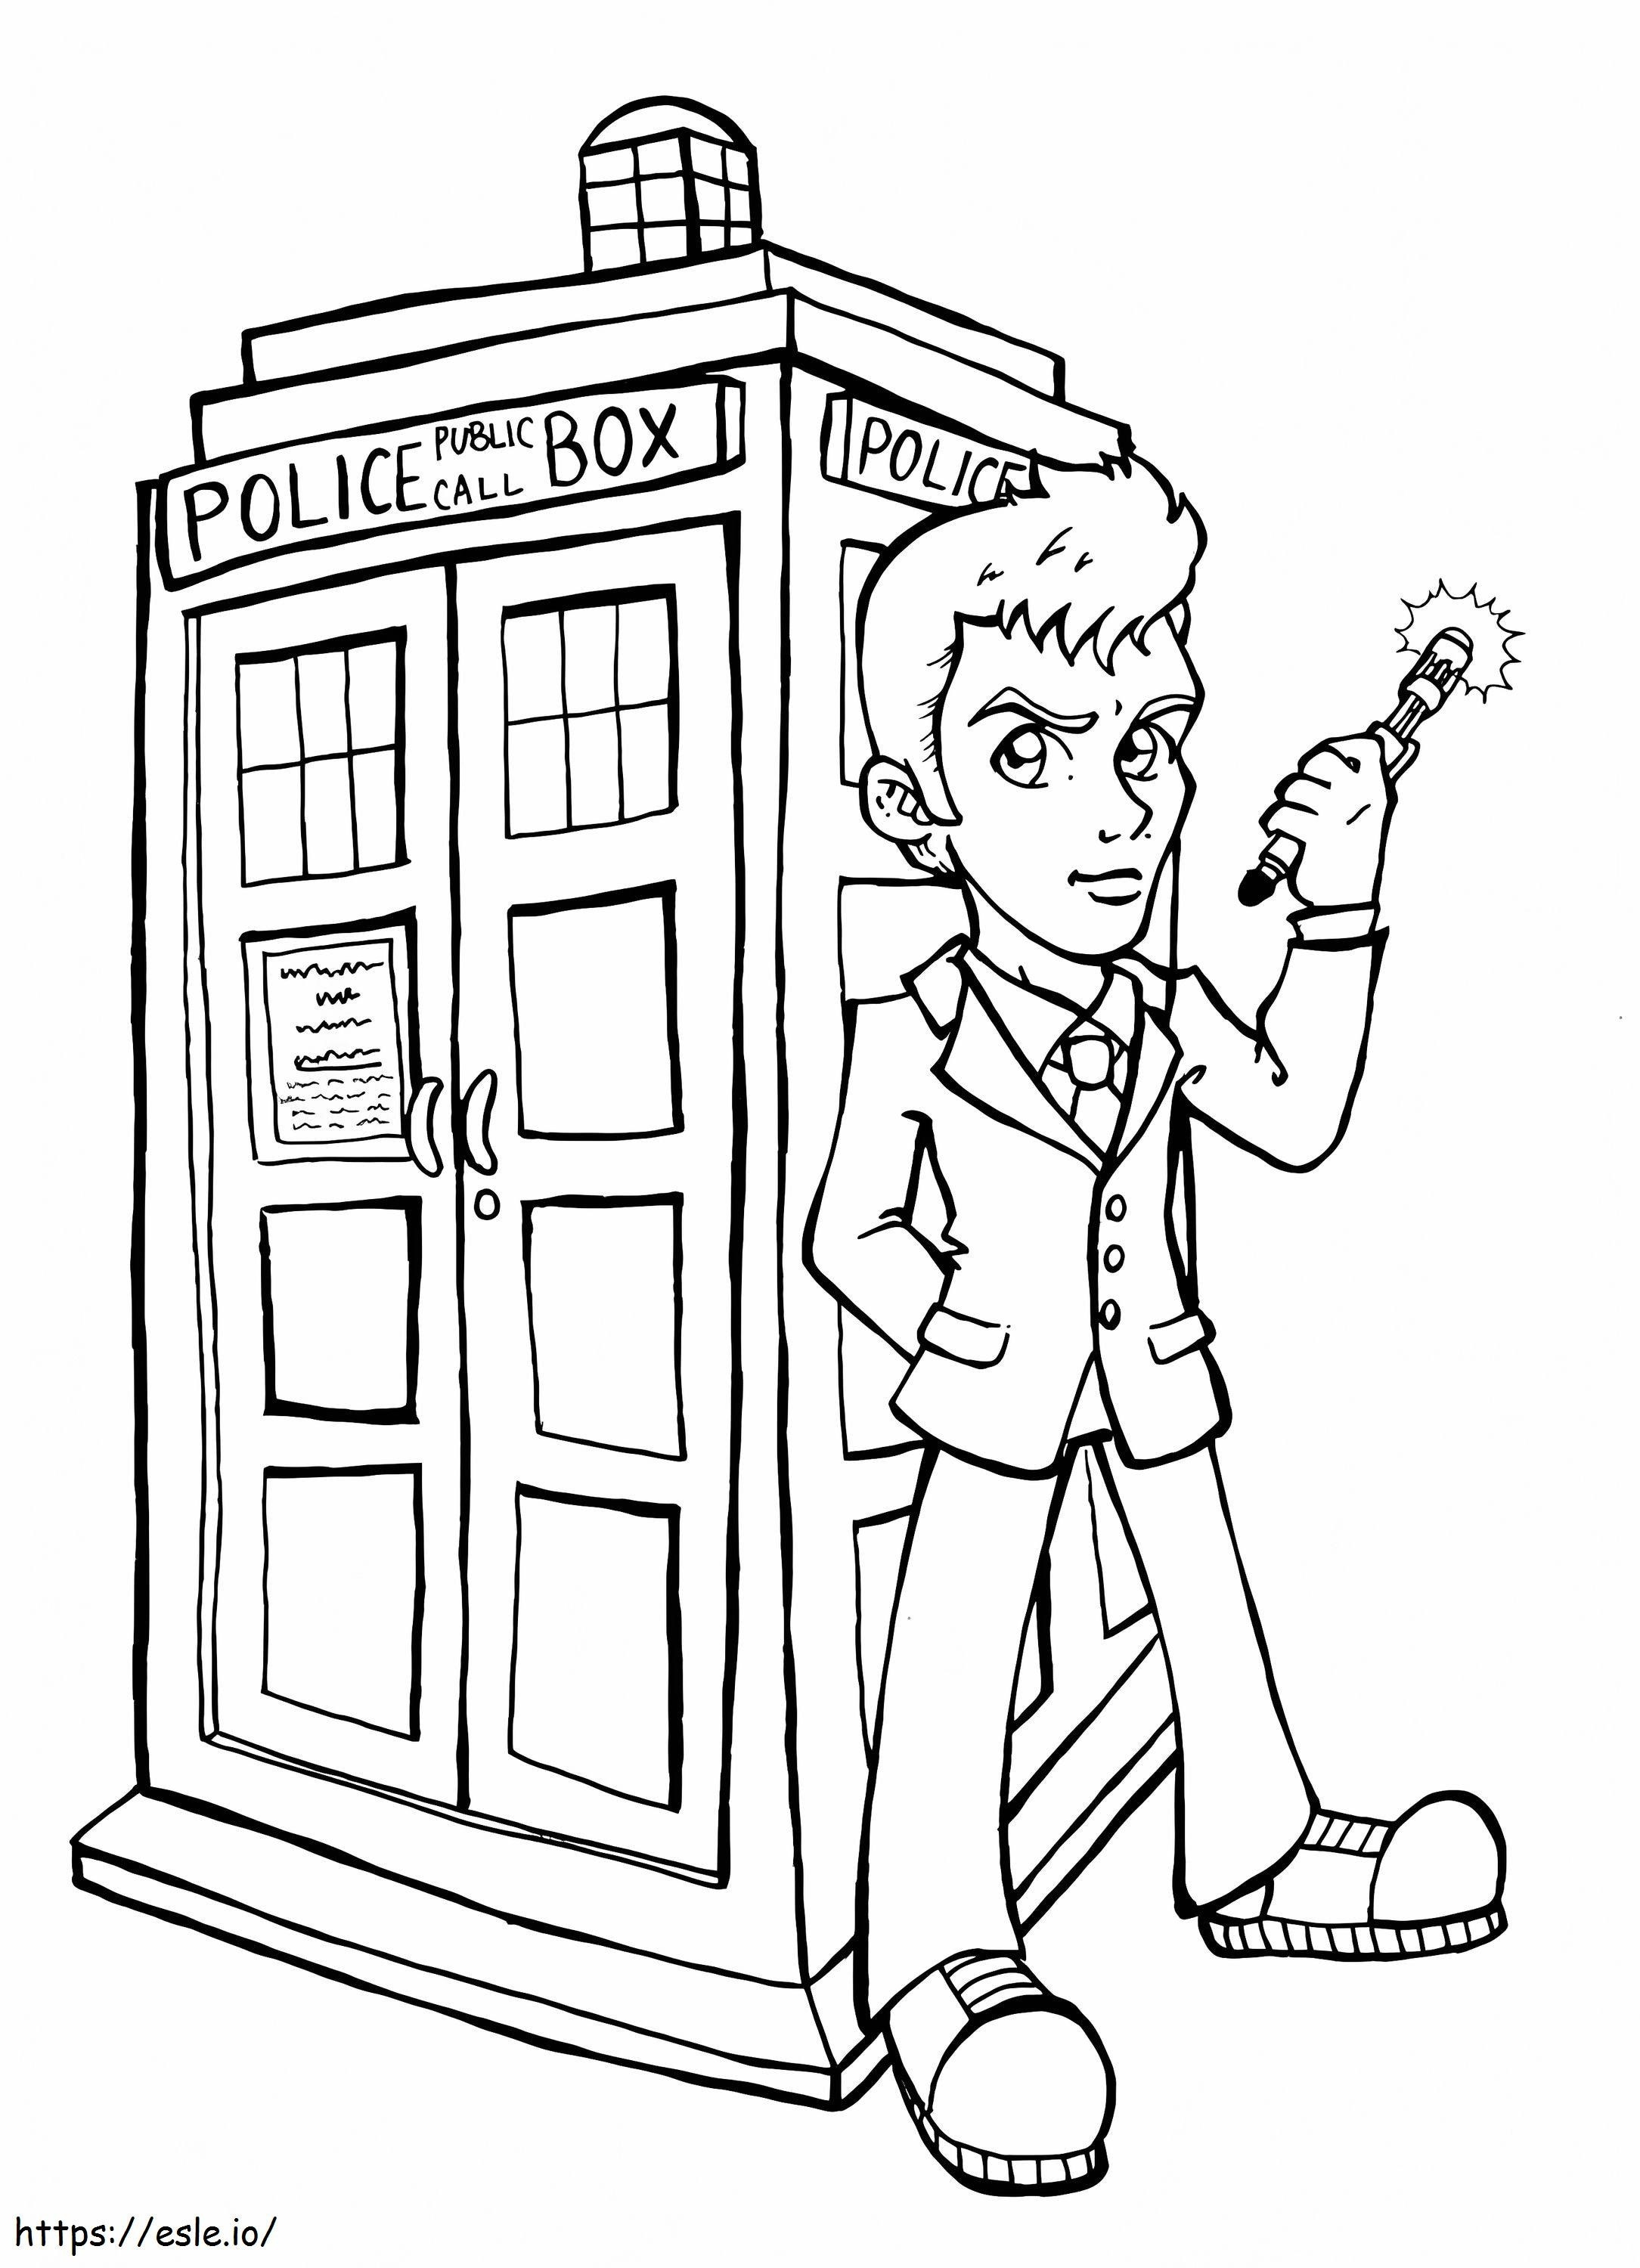 Cartoon Doctor Who kleurplaat kleurplaat